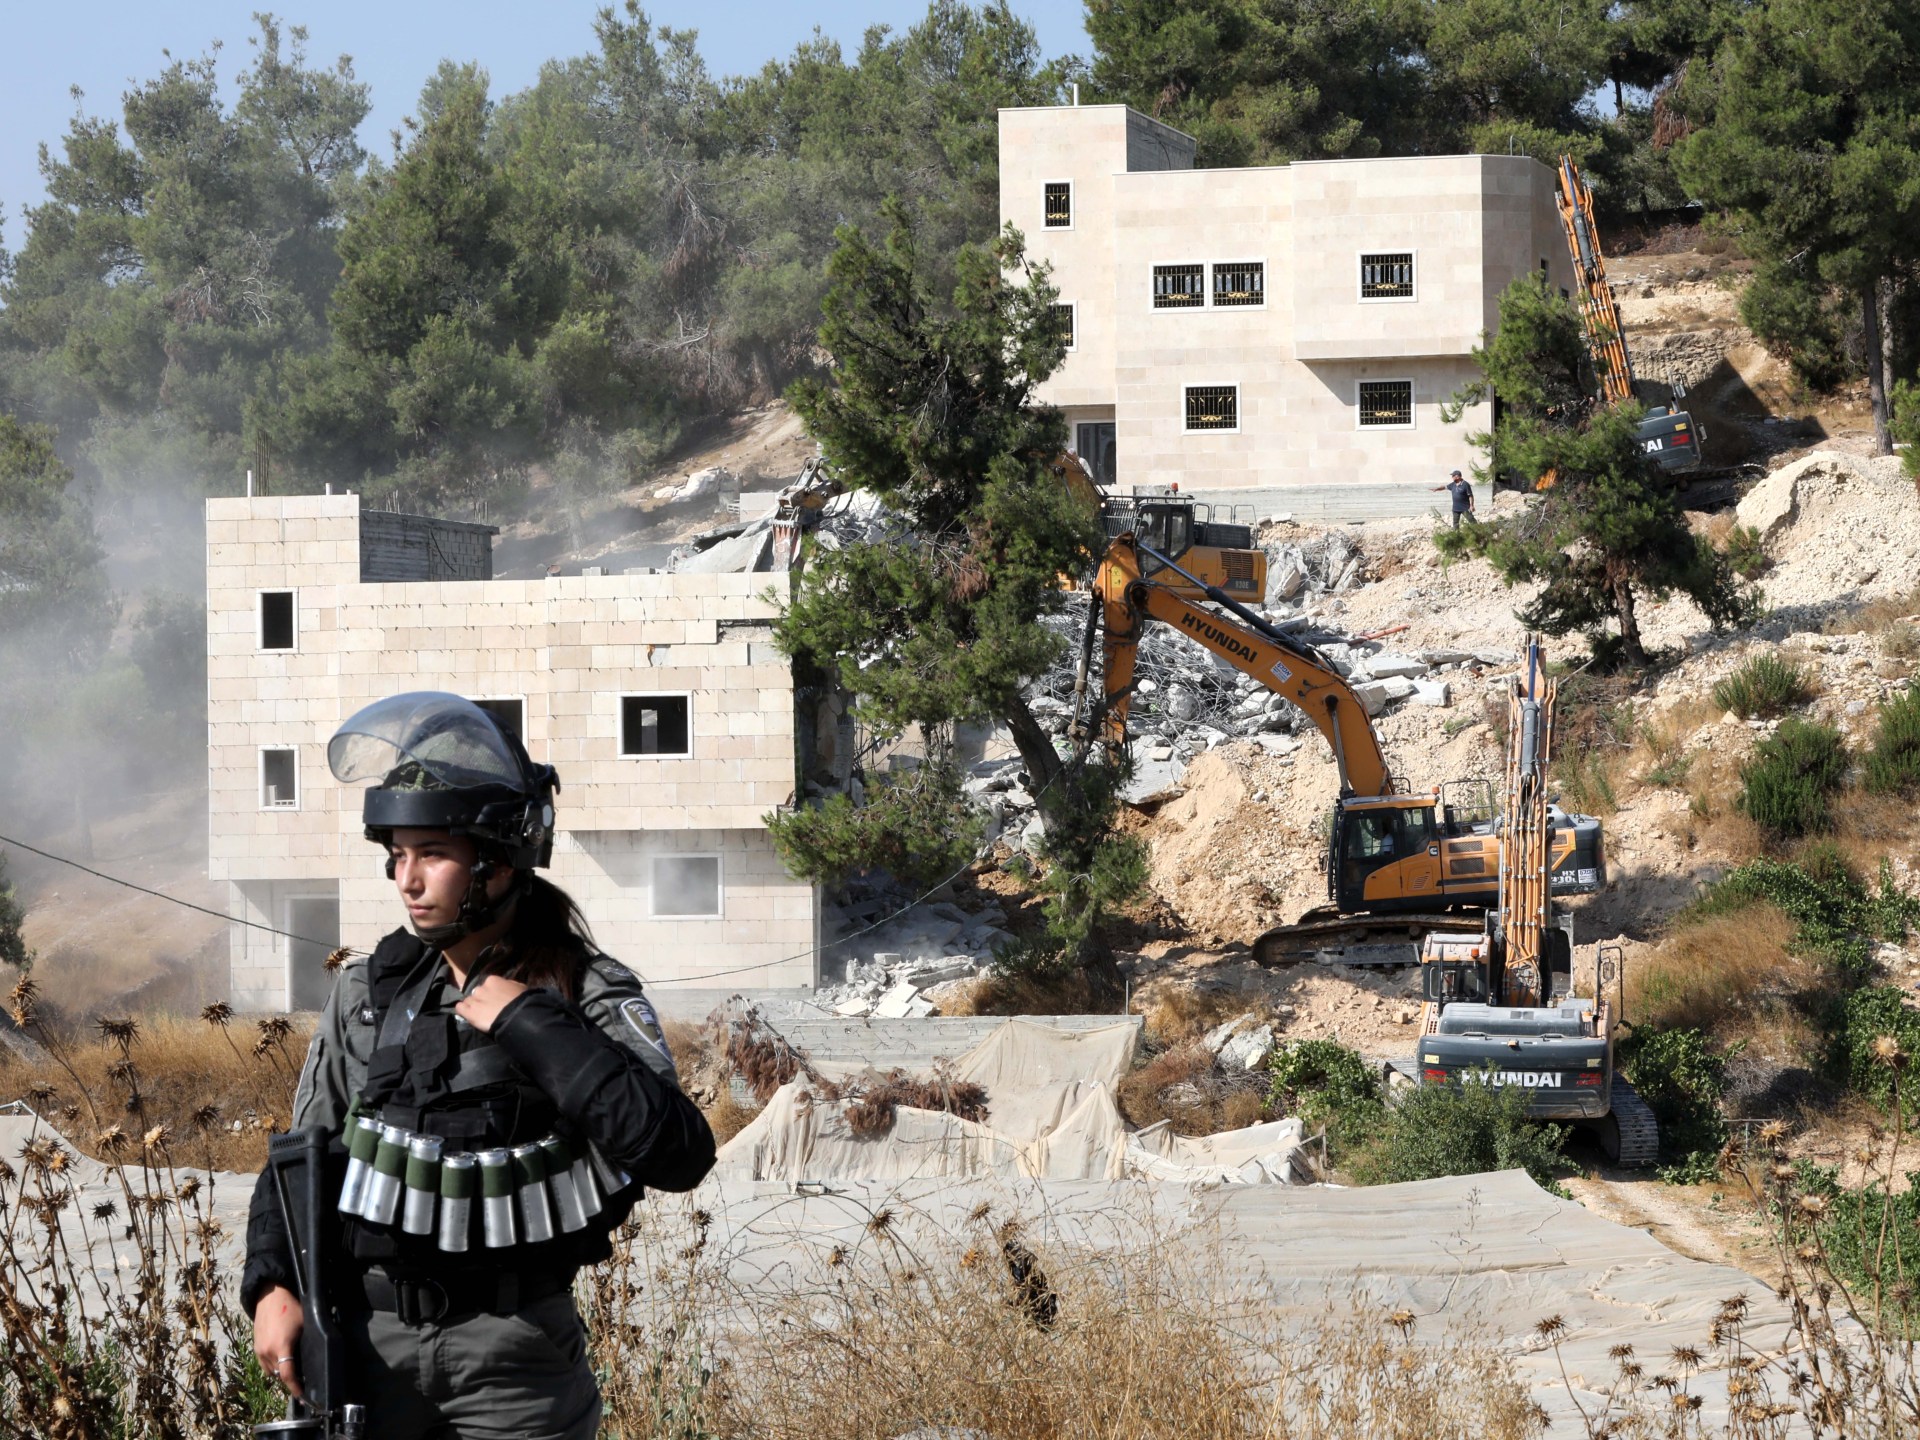 إسرائيل تهدم منزلا وتعتقل طفلا و6 فلسطينيين في مخيم الجلزون بالضفة الغربية | أخبار – البوكس نيوز